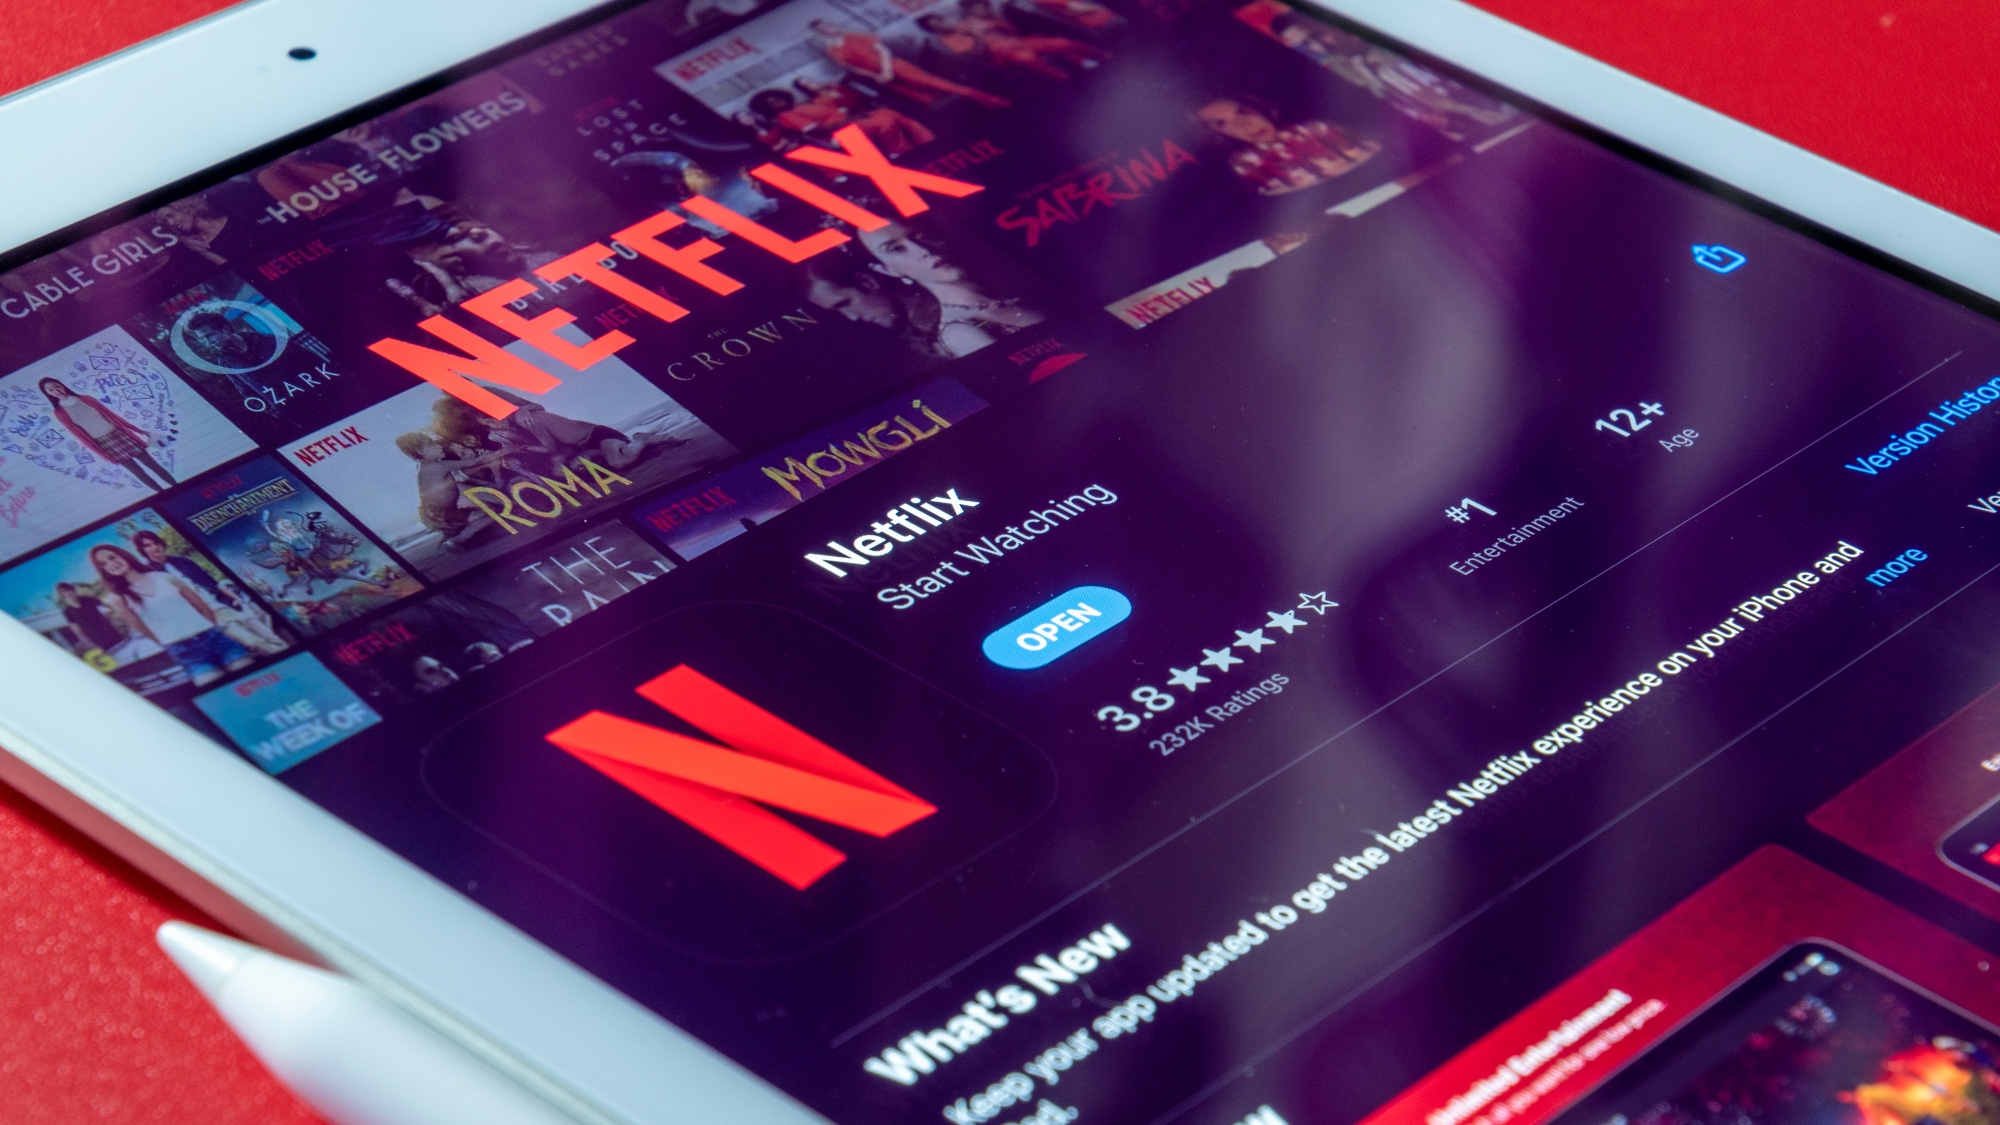 Planos Netflix: conheça os preços e benefícios de cada assinatura em 2023 –  Tecnoblog